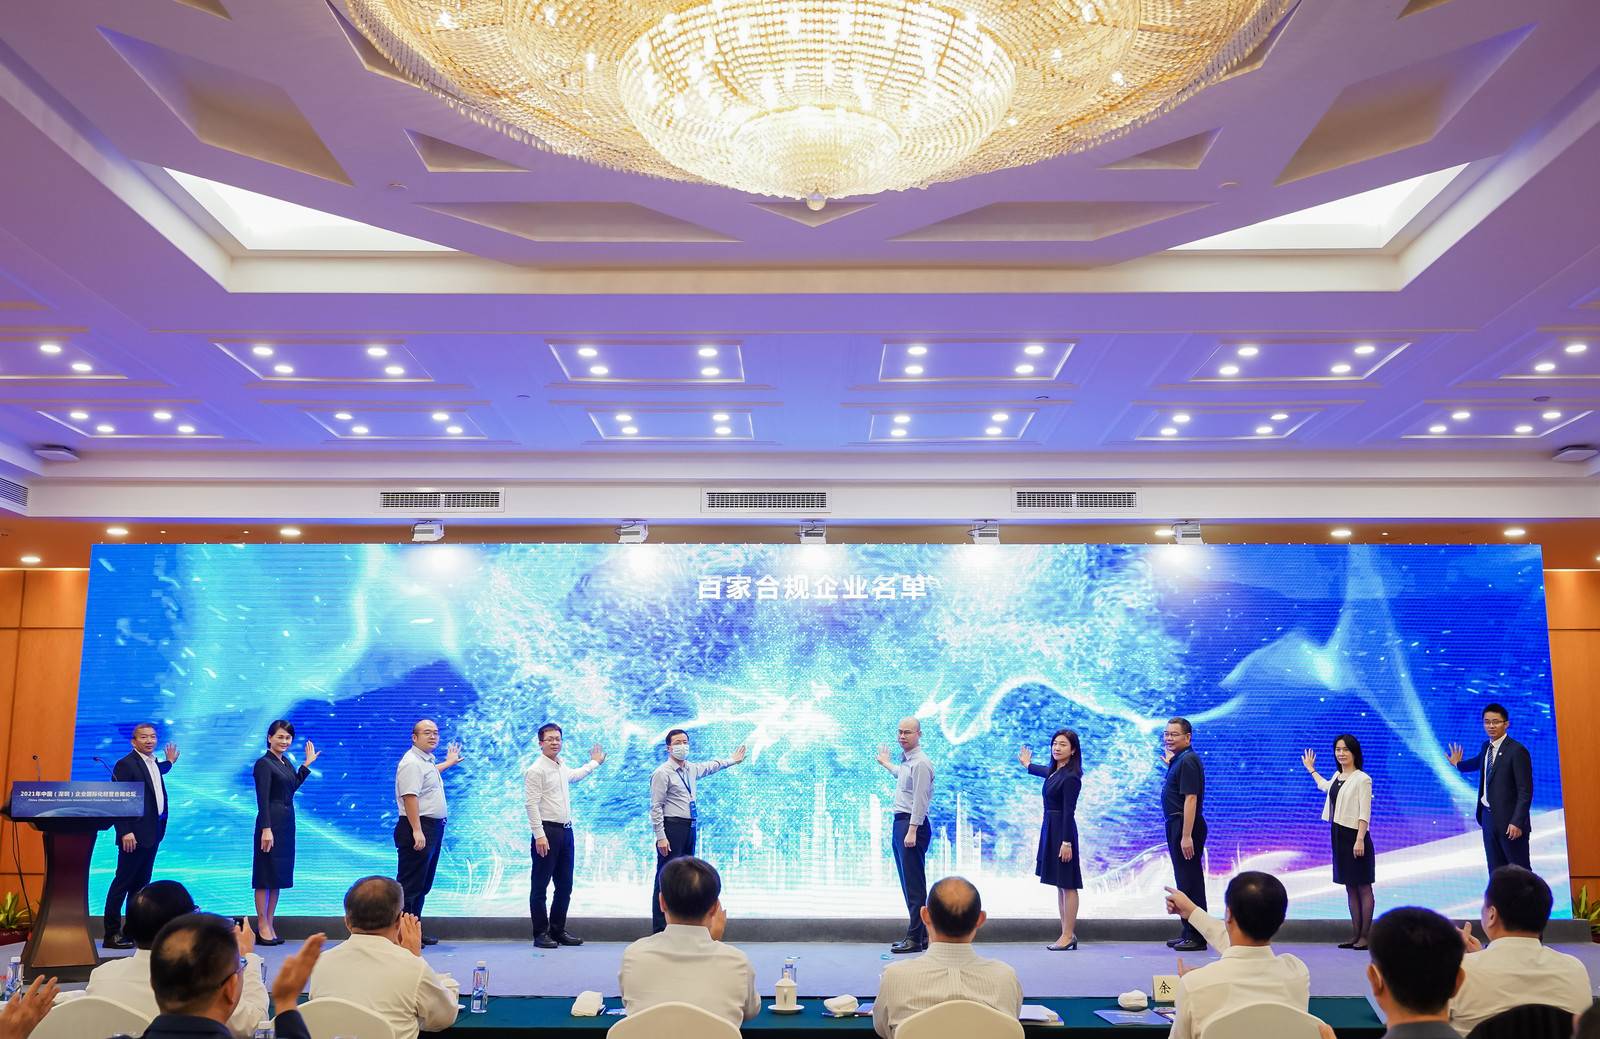 左一suncitygroup首席合规官-百家合规宣言代表企业 (2).jpg